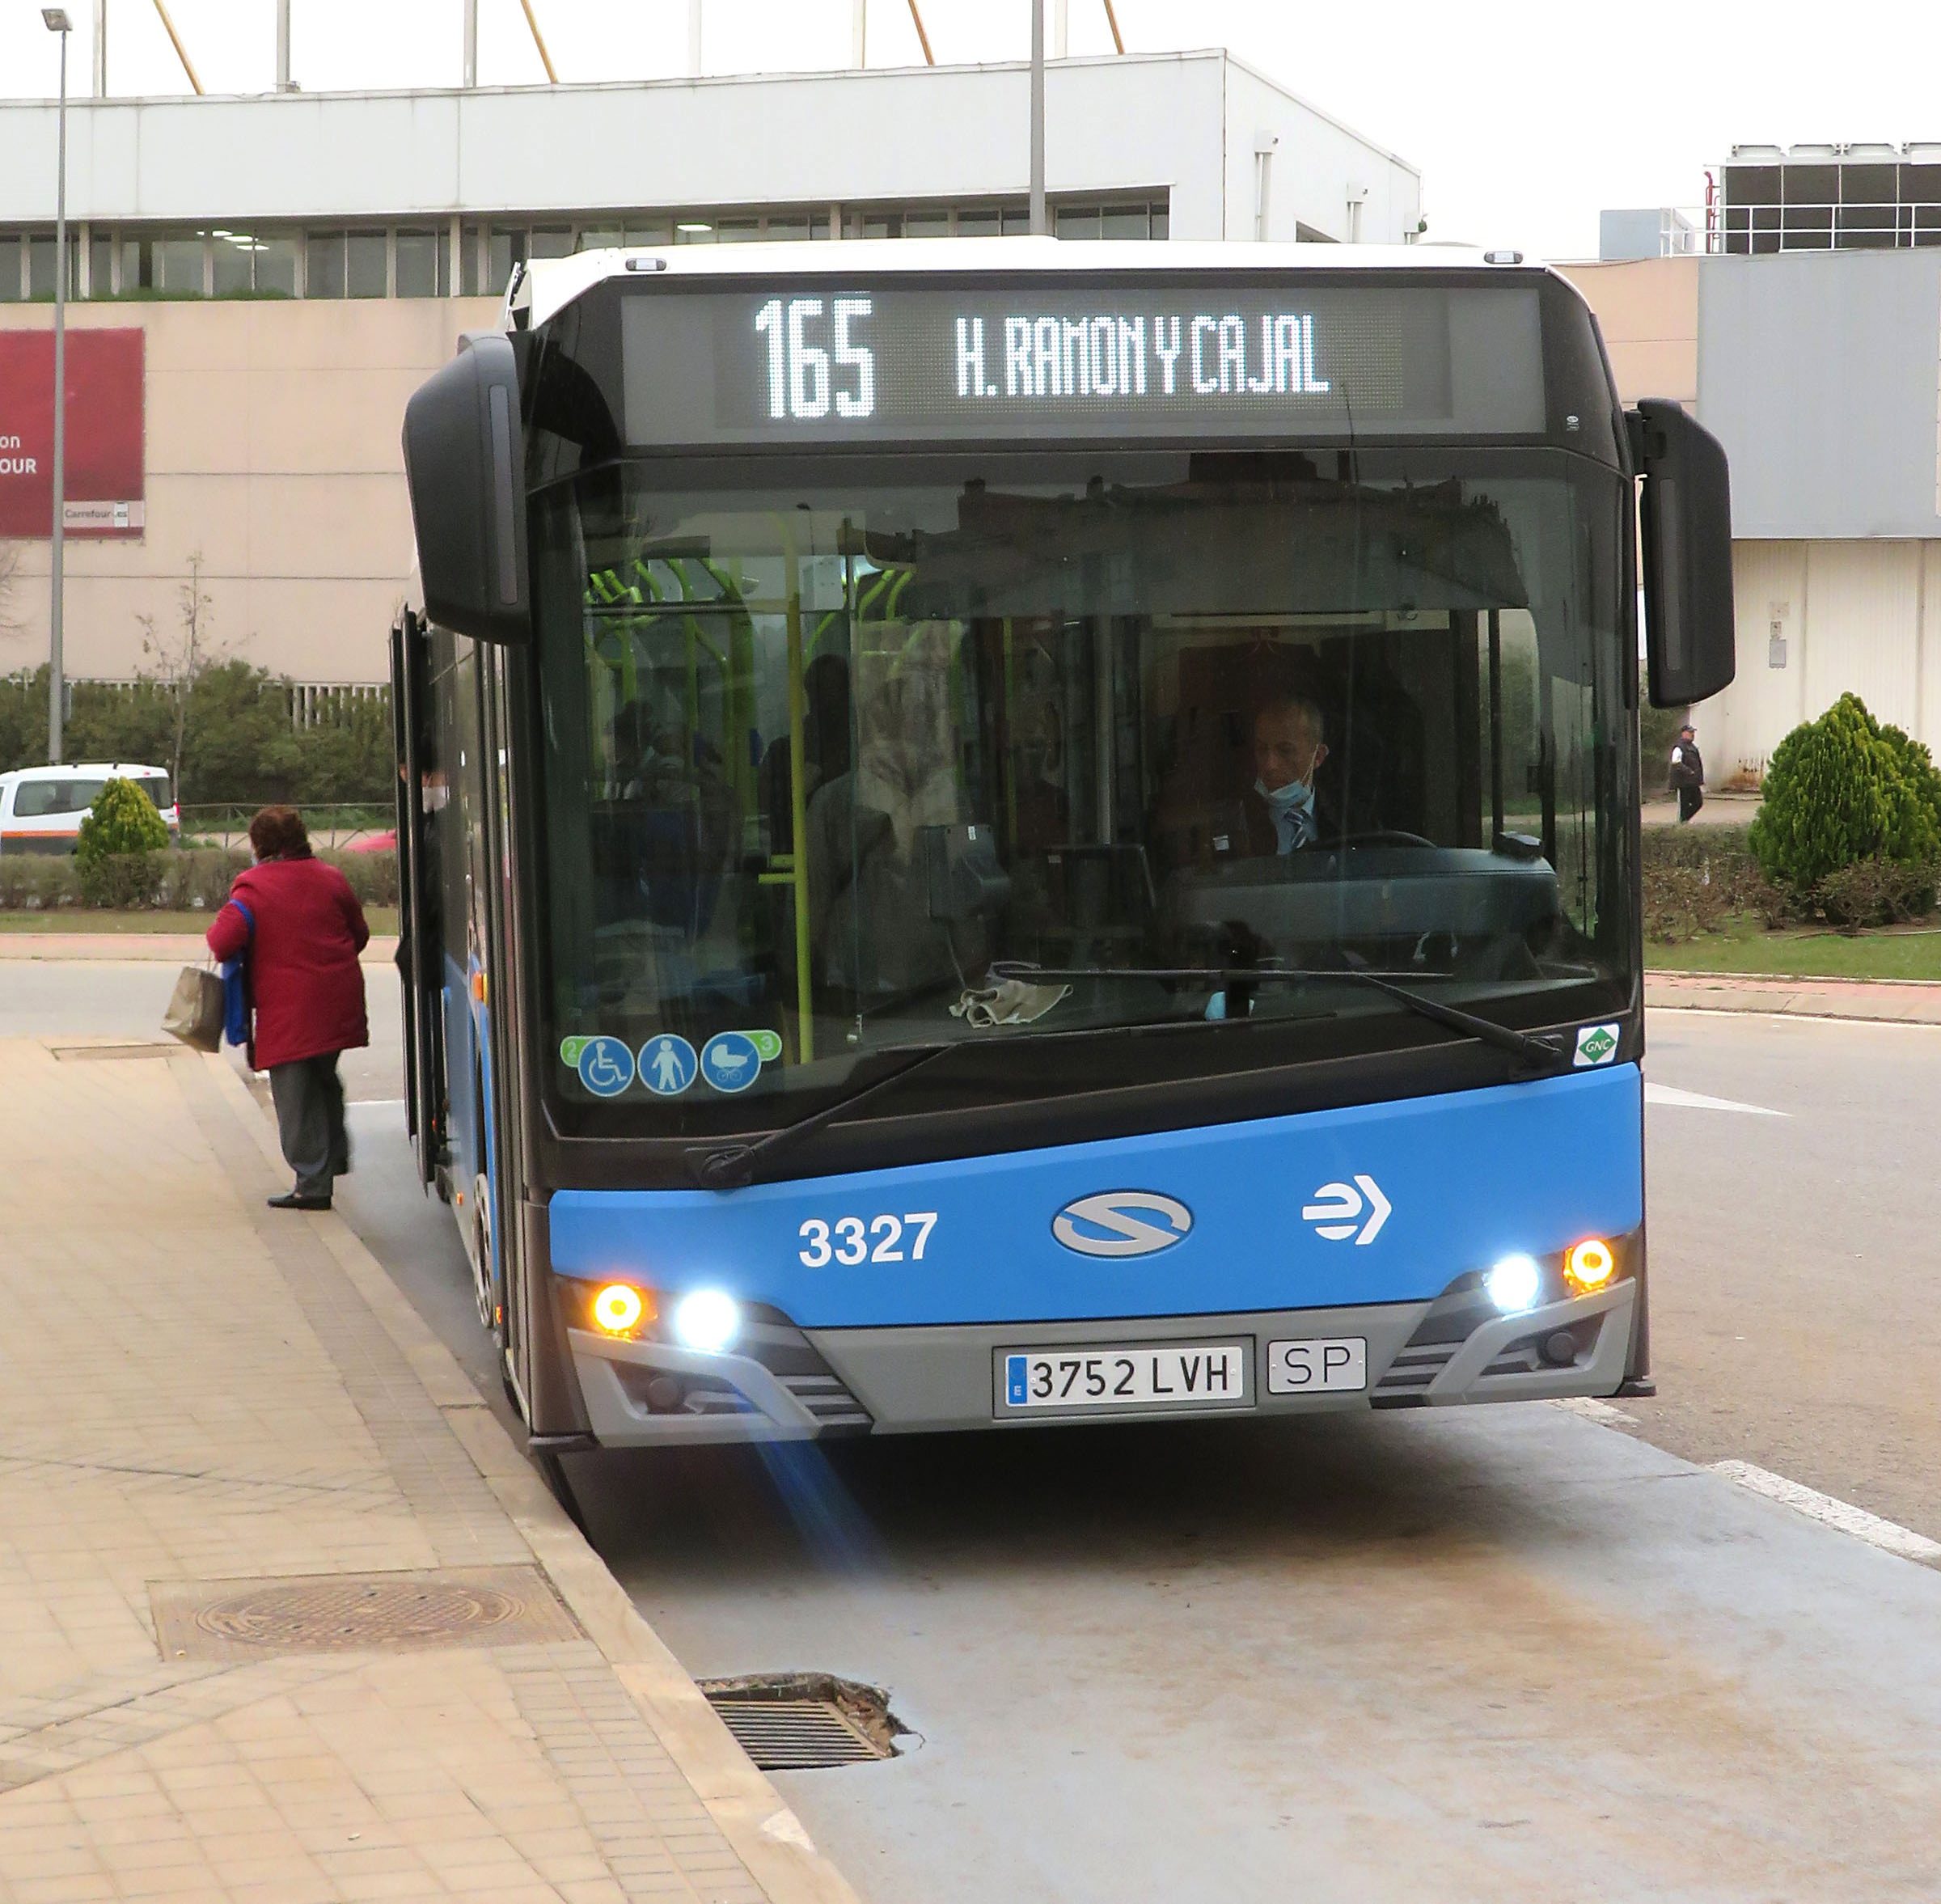 El autobús 165 que conecta San Blas-Canillejas con el hospital de Ramón y Cajal